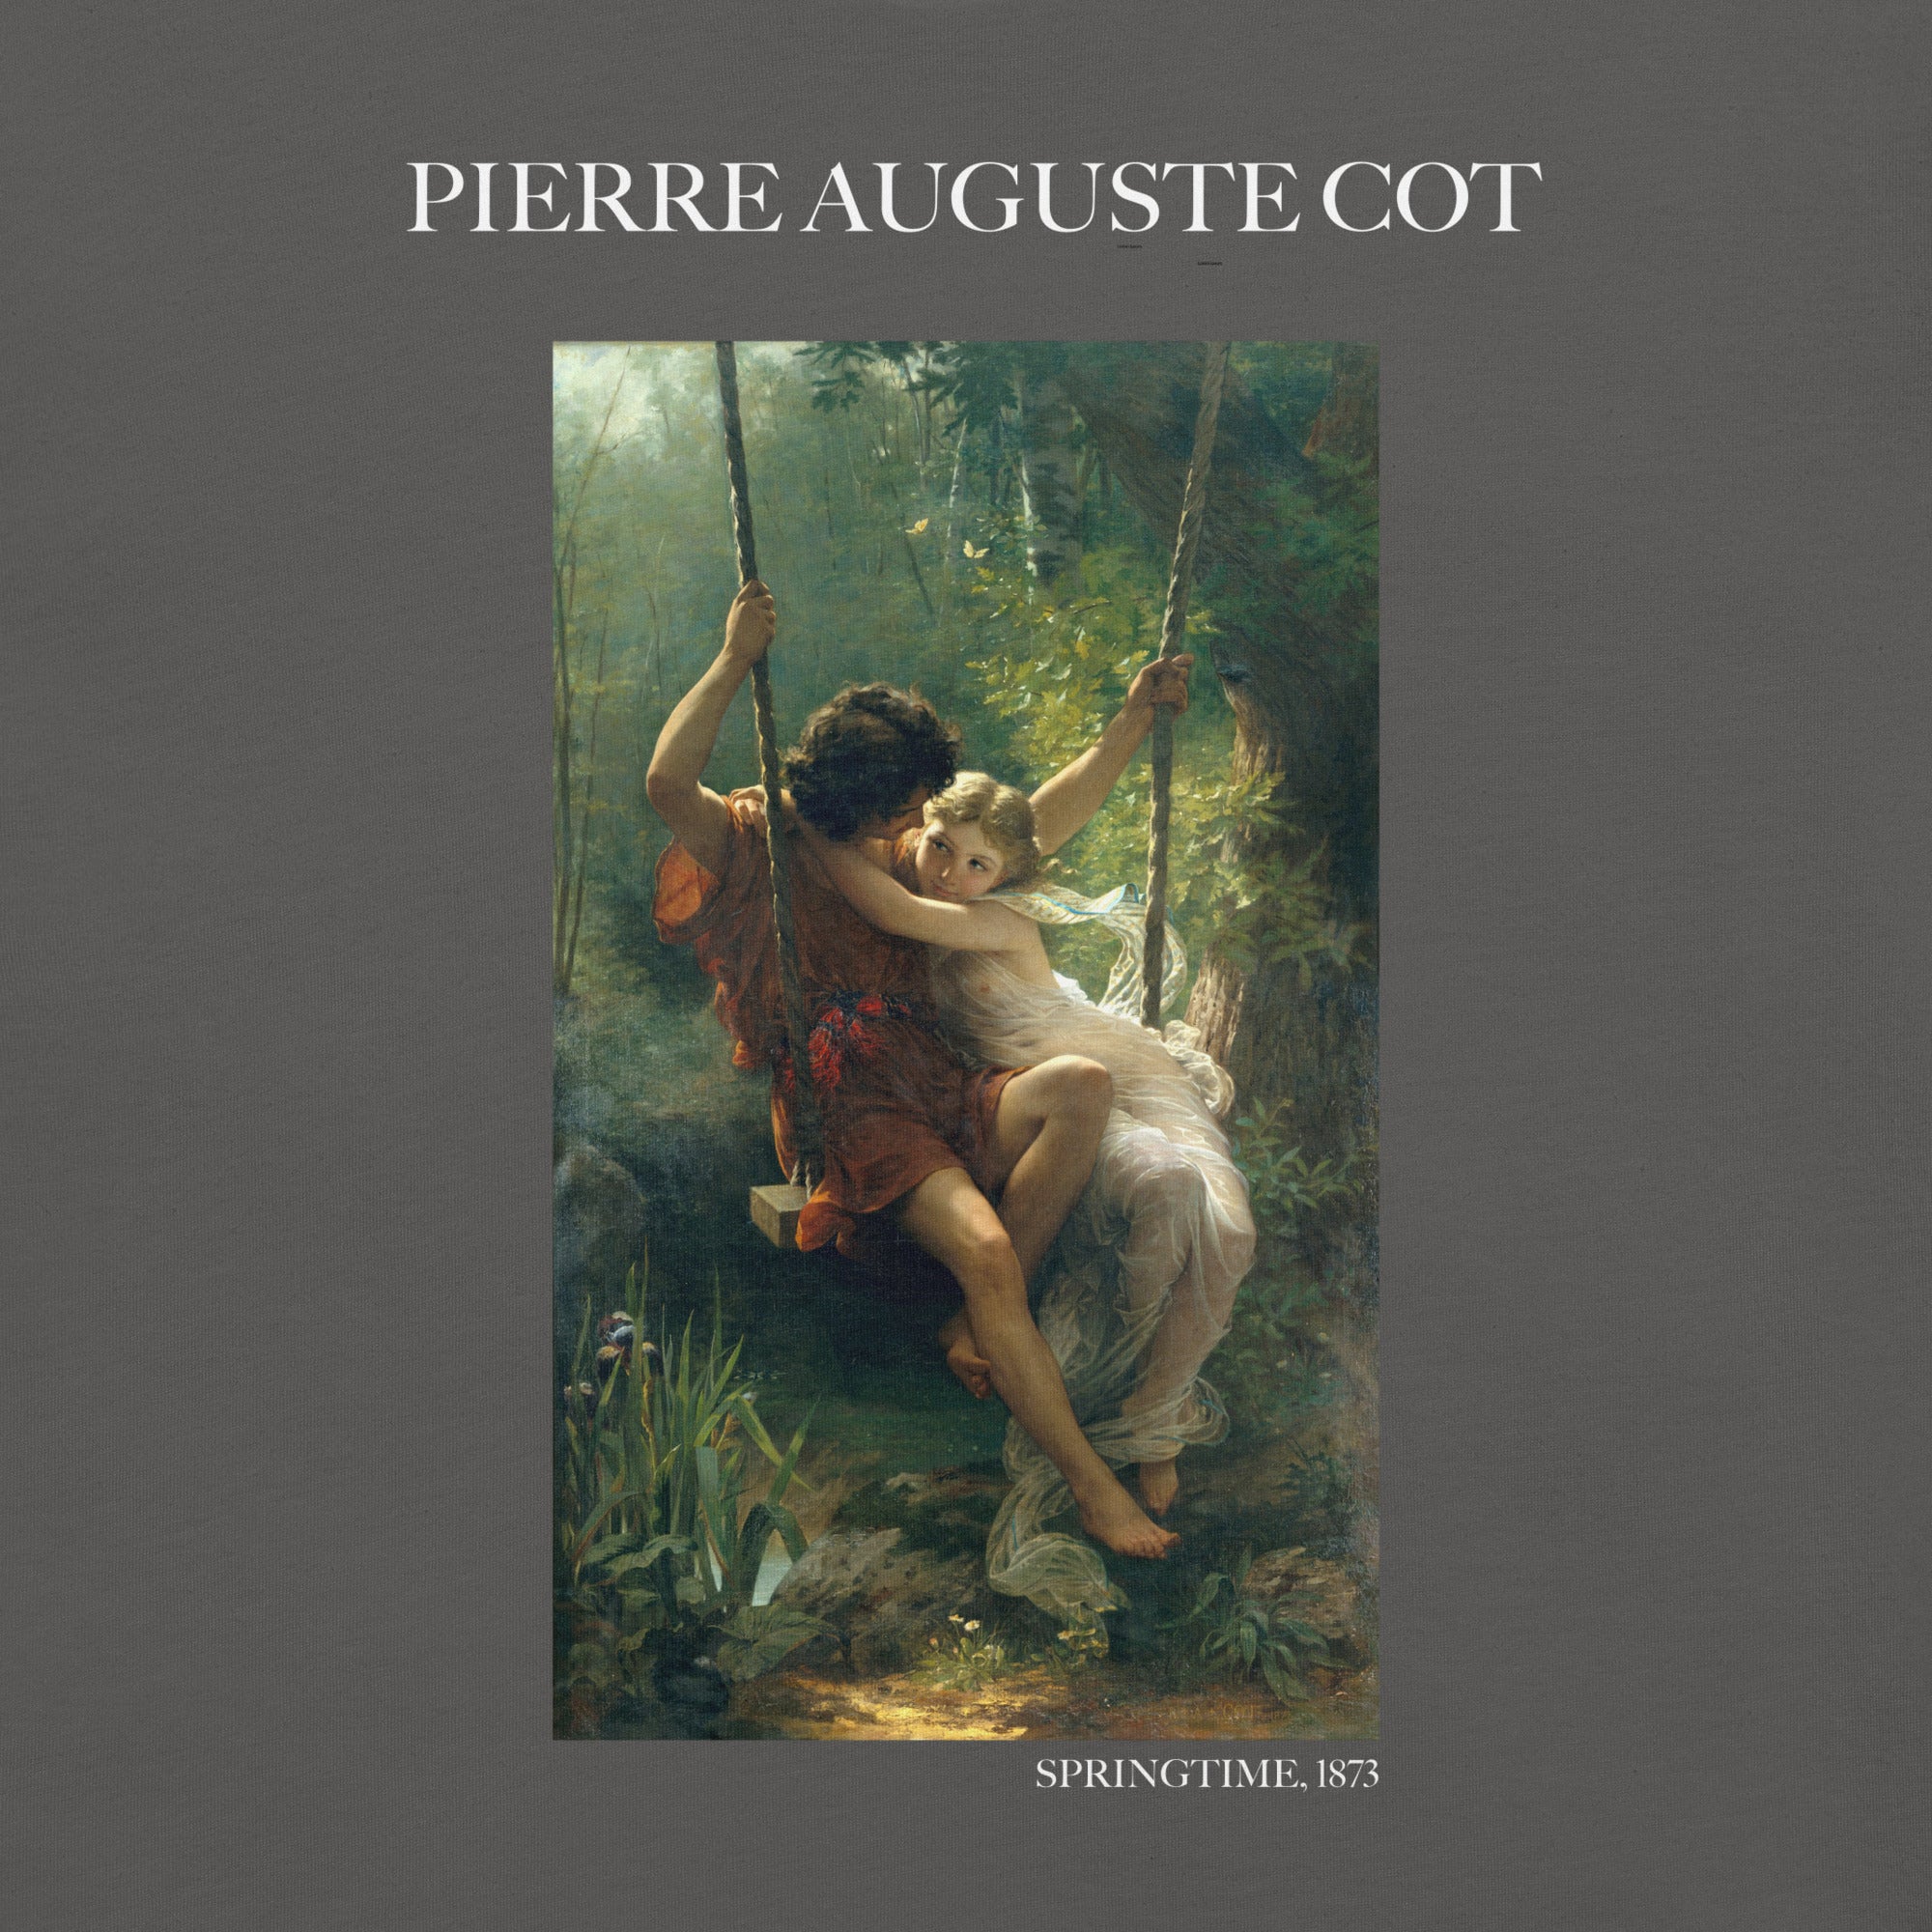 Pierre Auguste Cot 'Frühling' berühmtes Gemälde T-Shirt | Unisex klassisches Kunst-T-Shirt